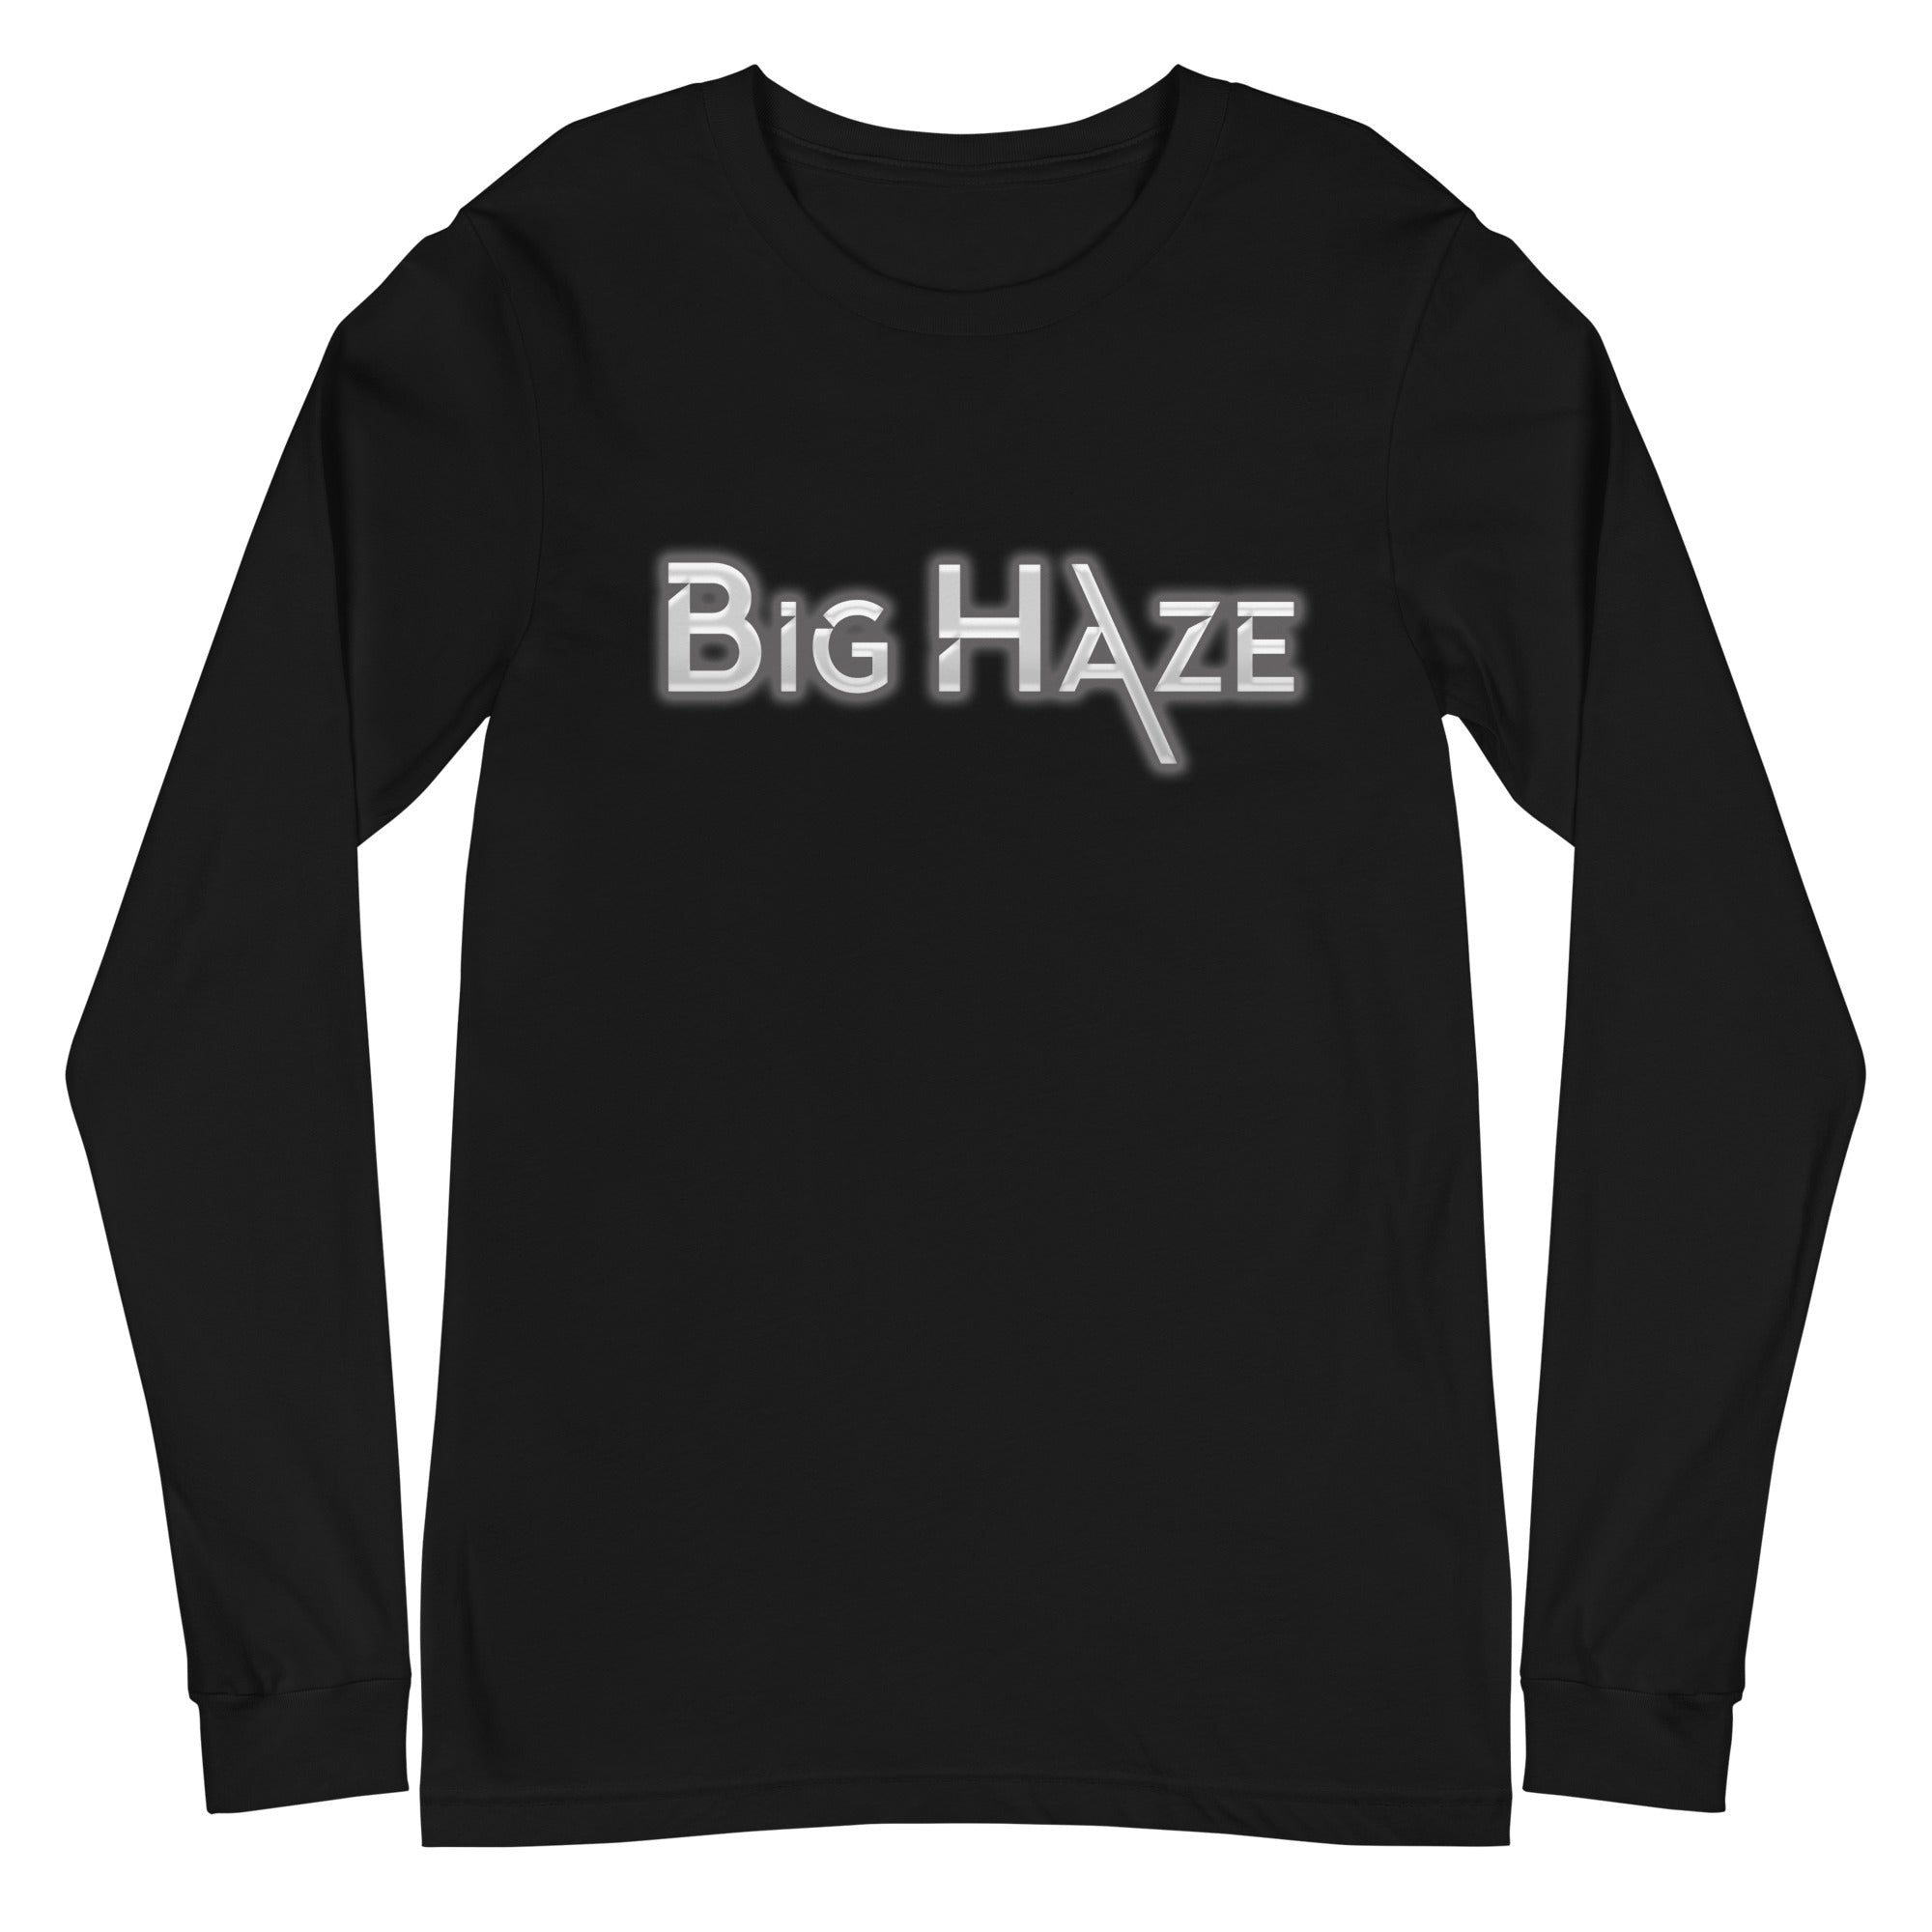 Big Haze - Unisex Long Sleeve Tee